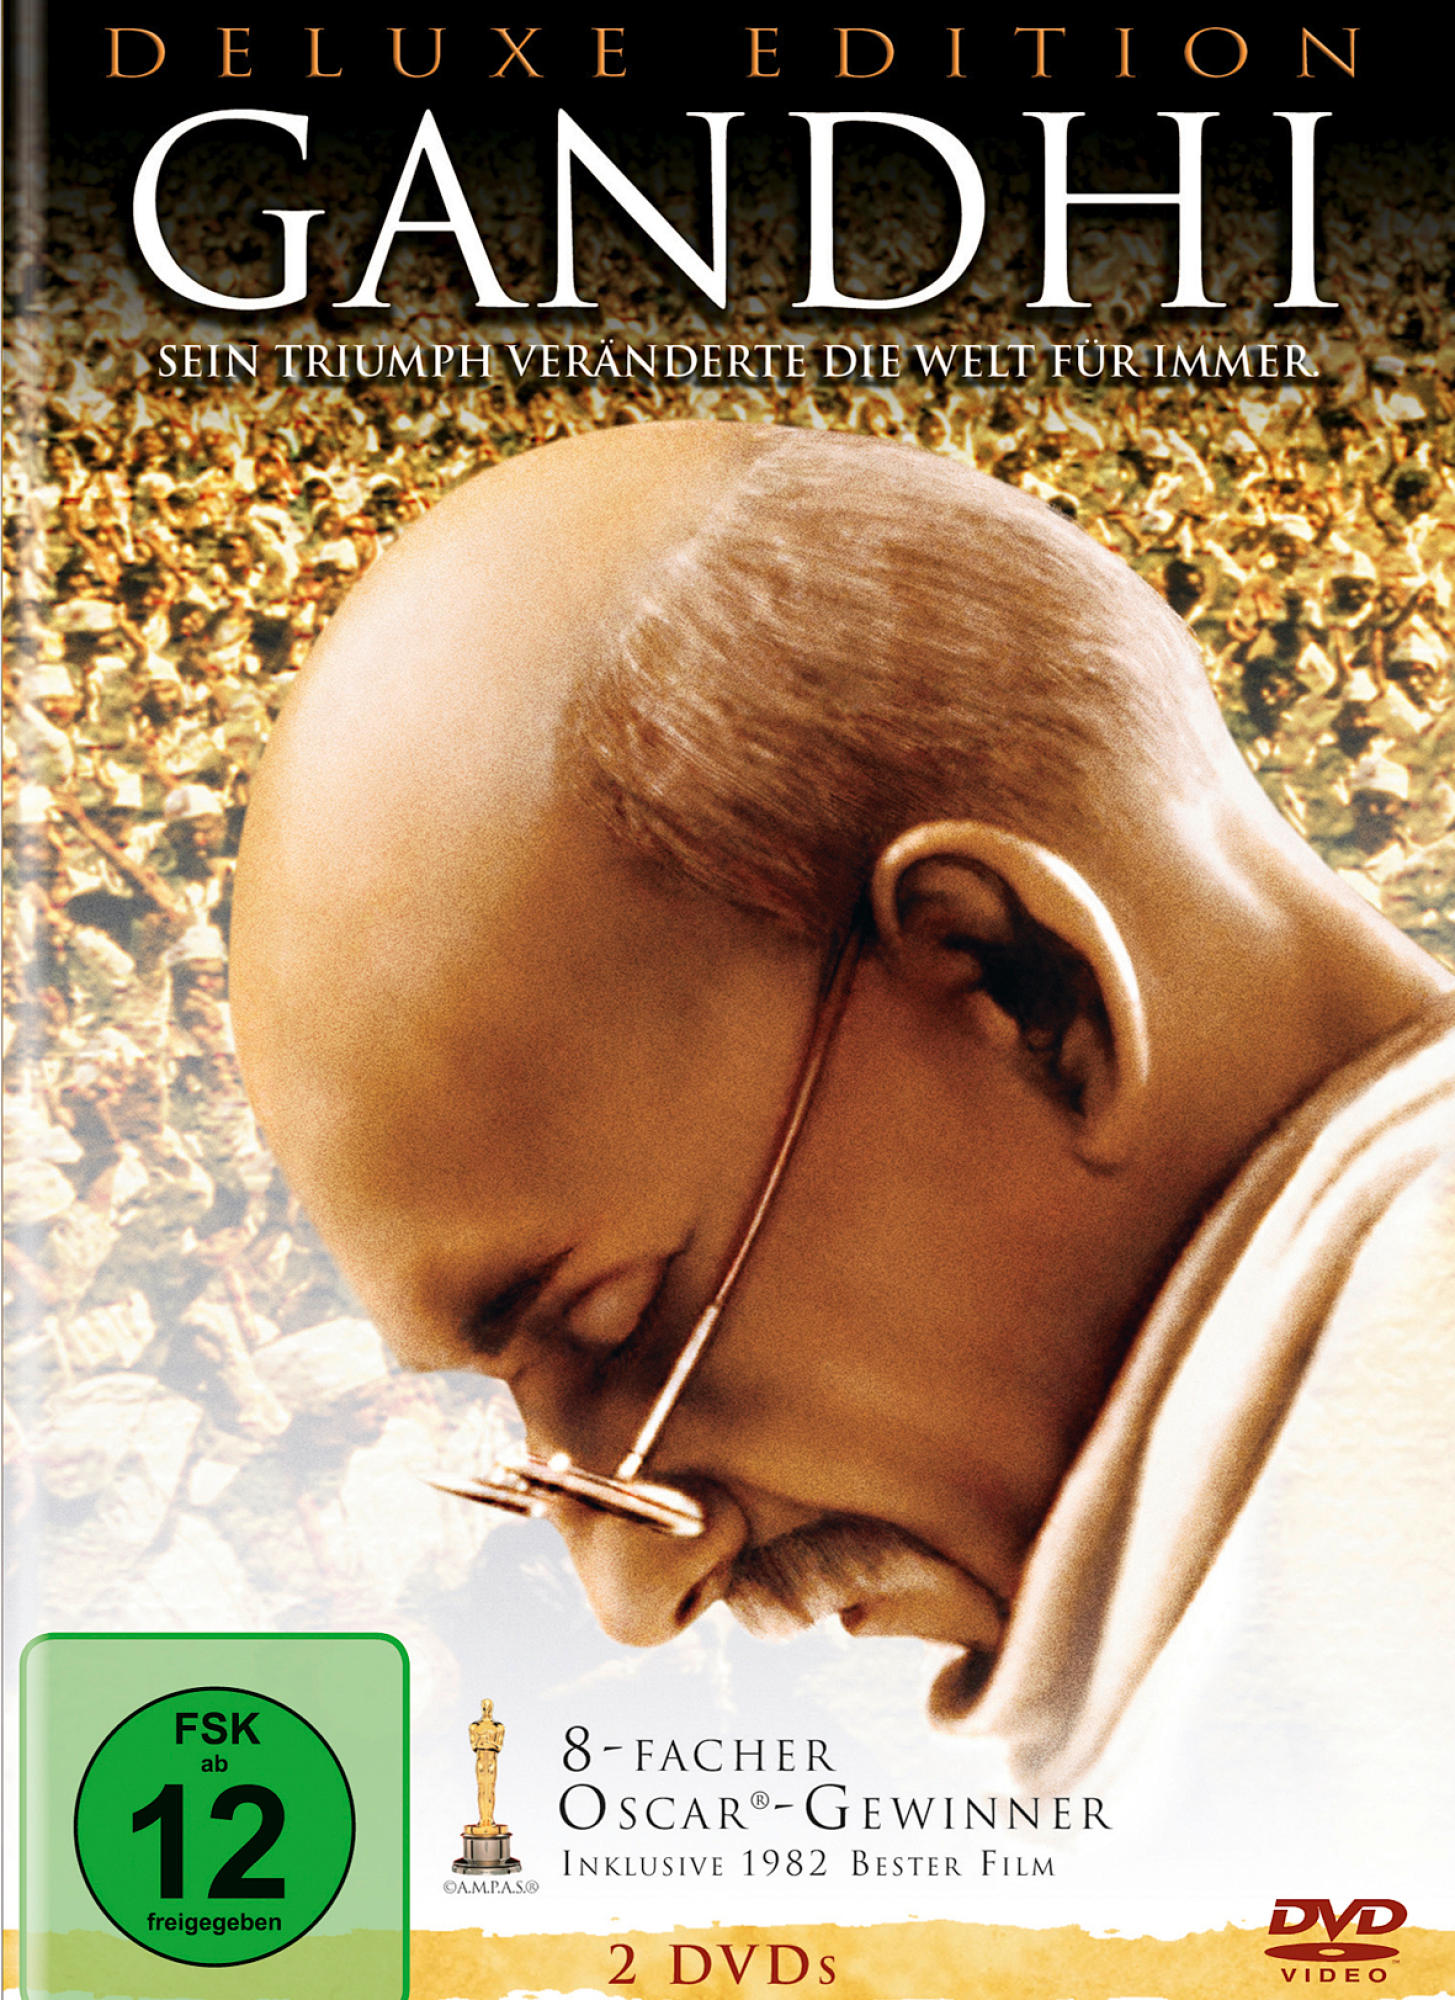 Edition DVD - Gandhi Deluxe